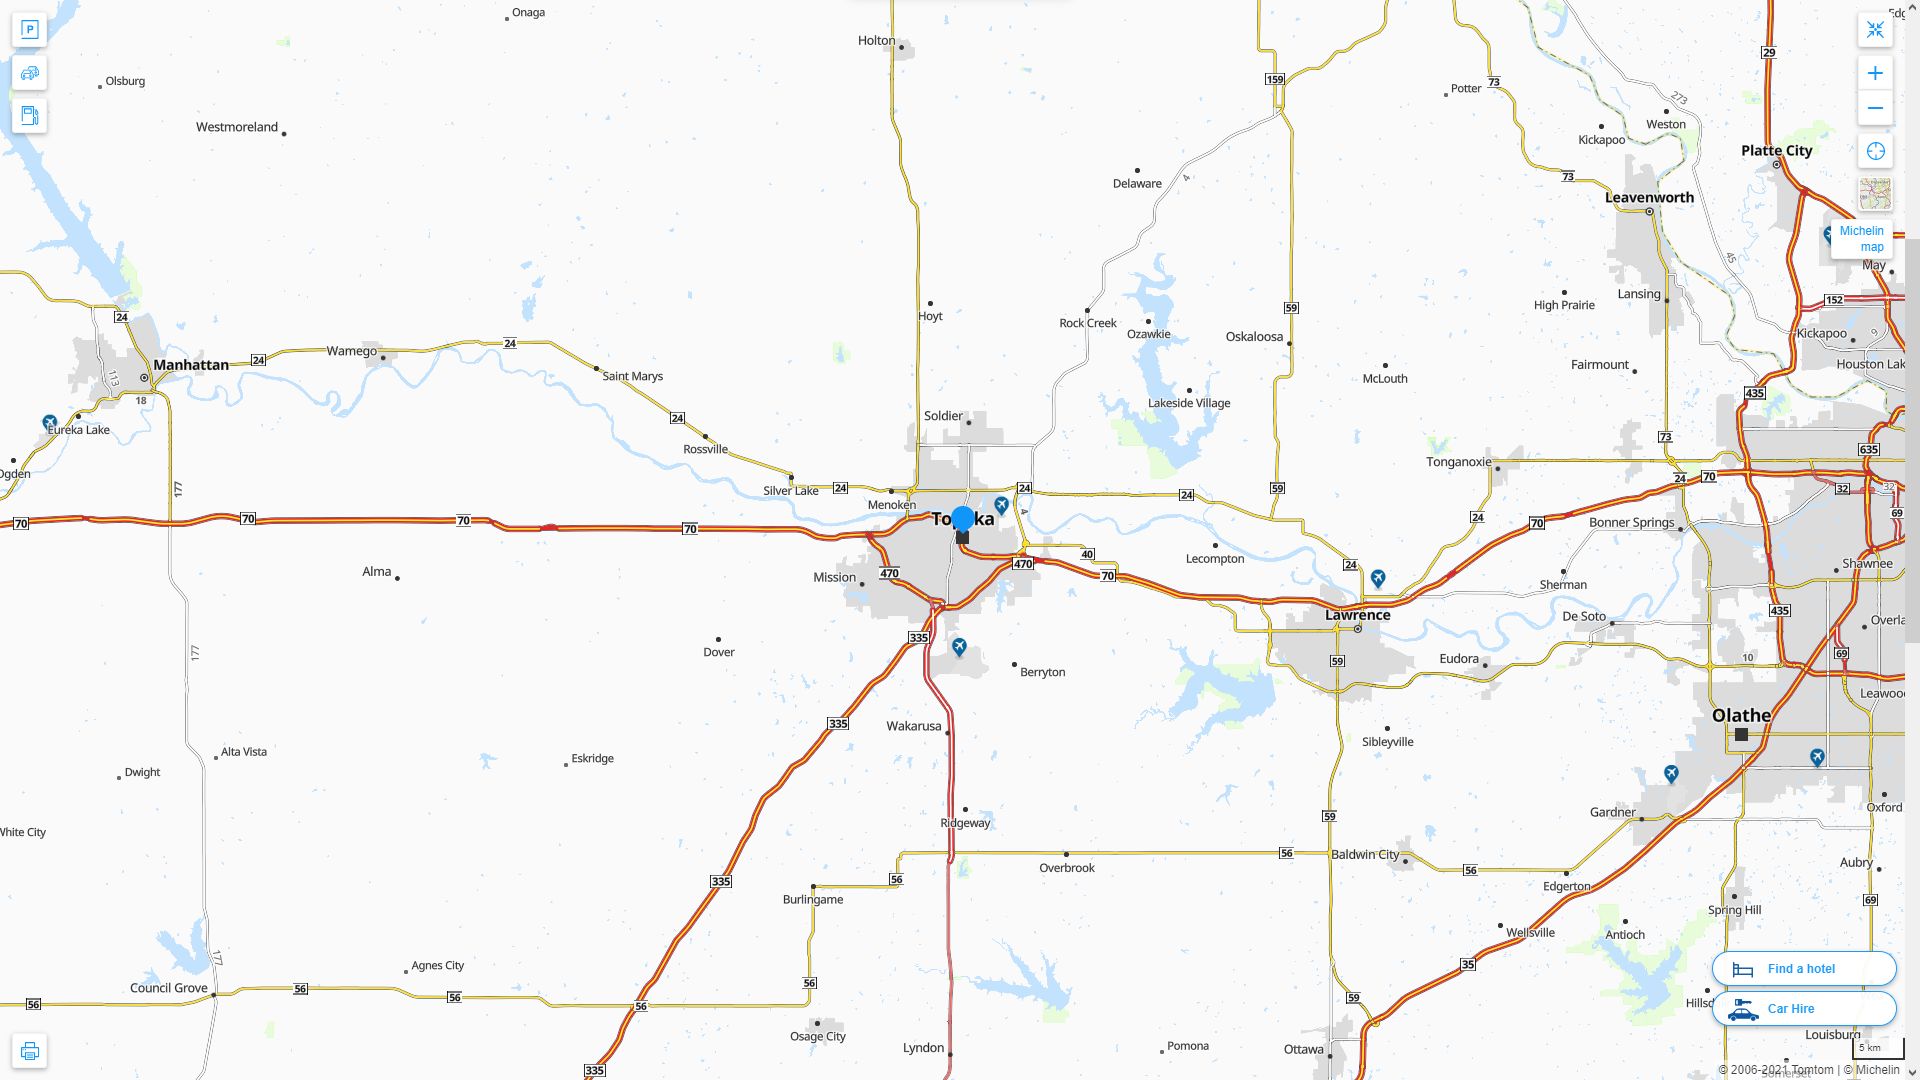 Topeka Kansas Highway and Road Map